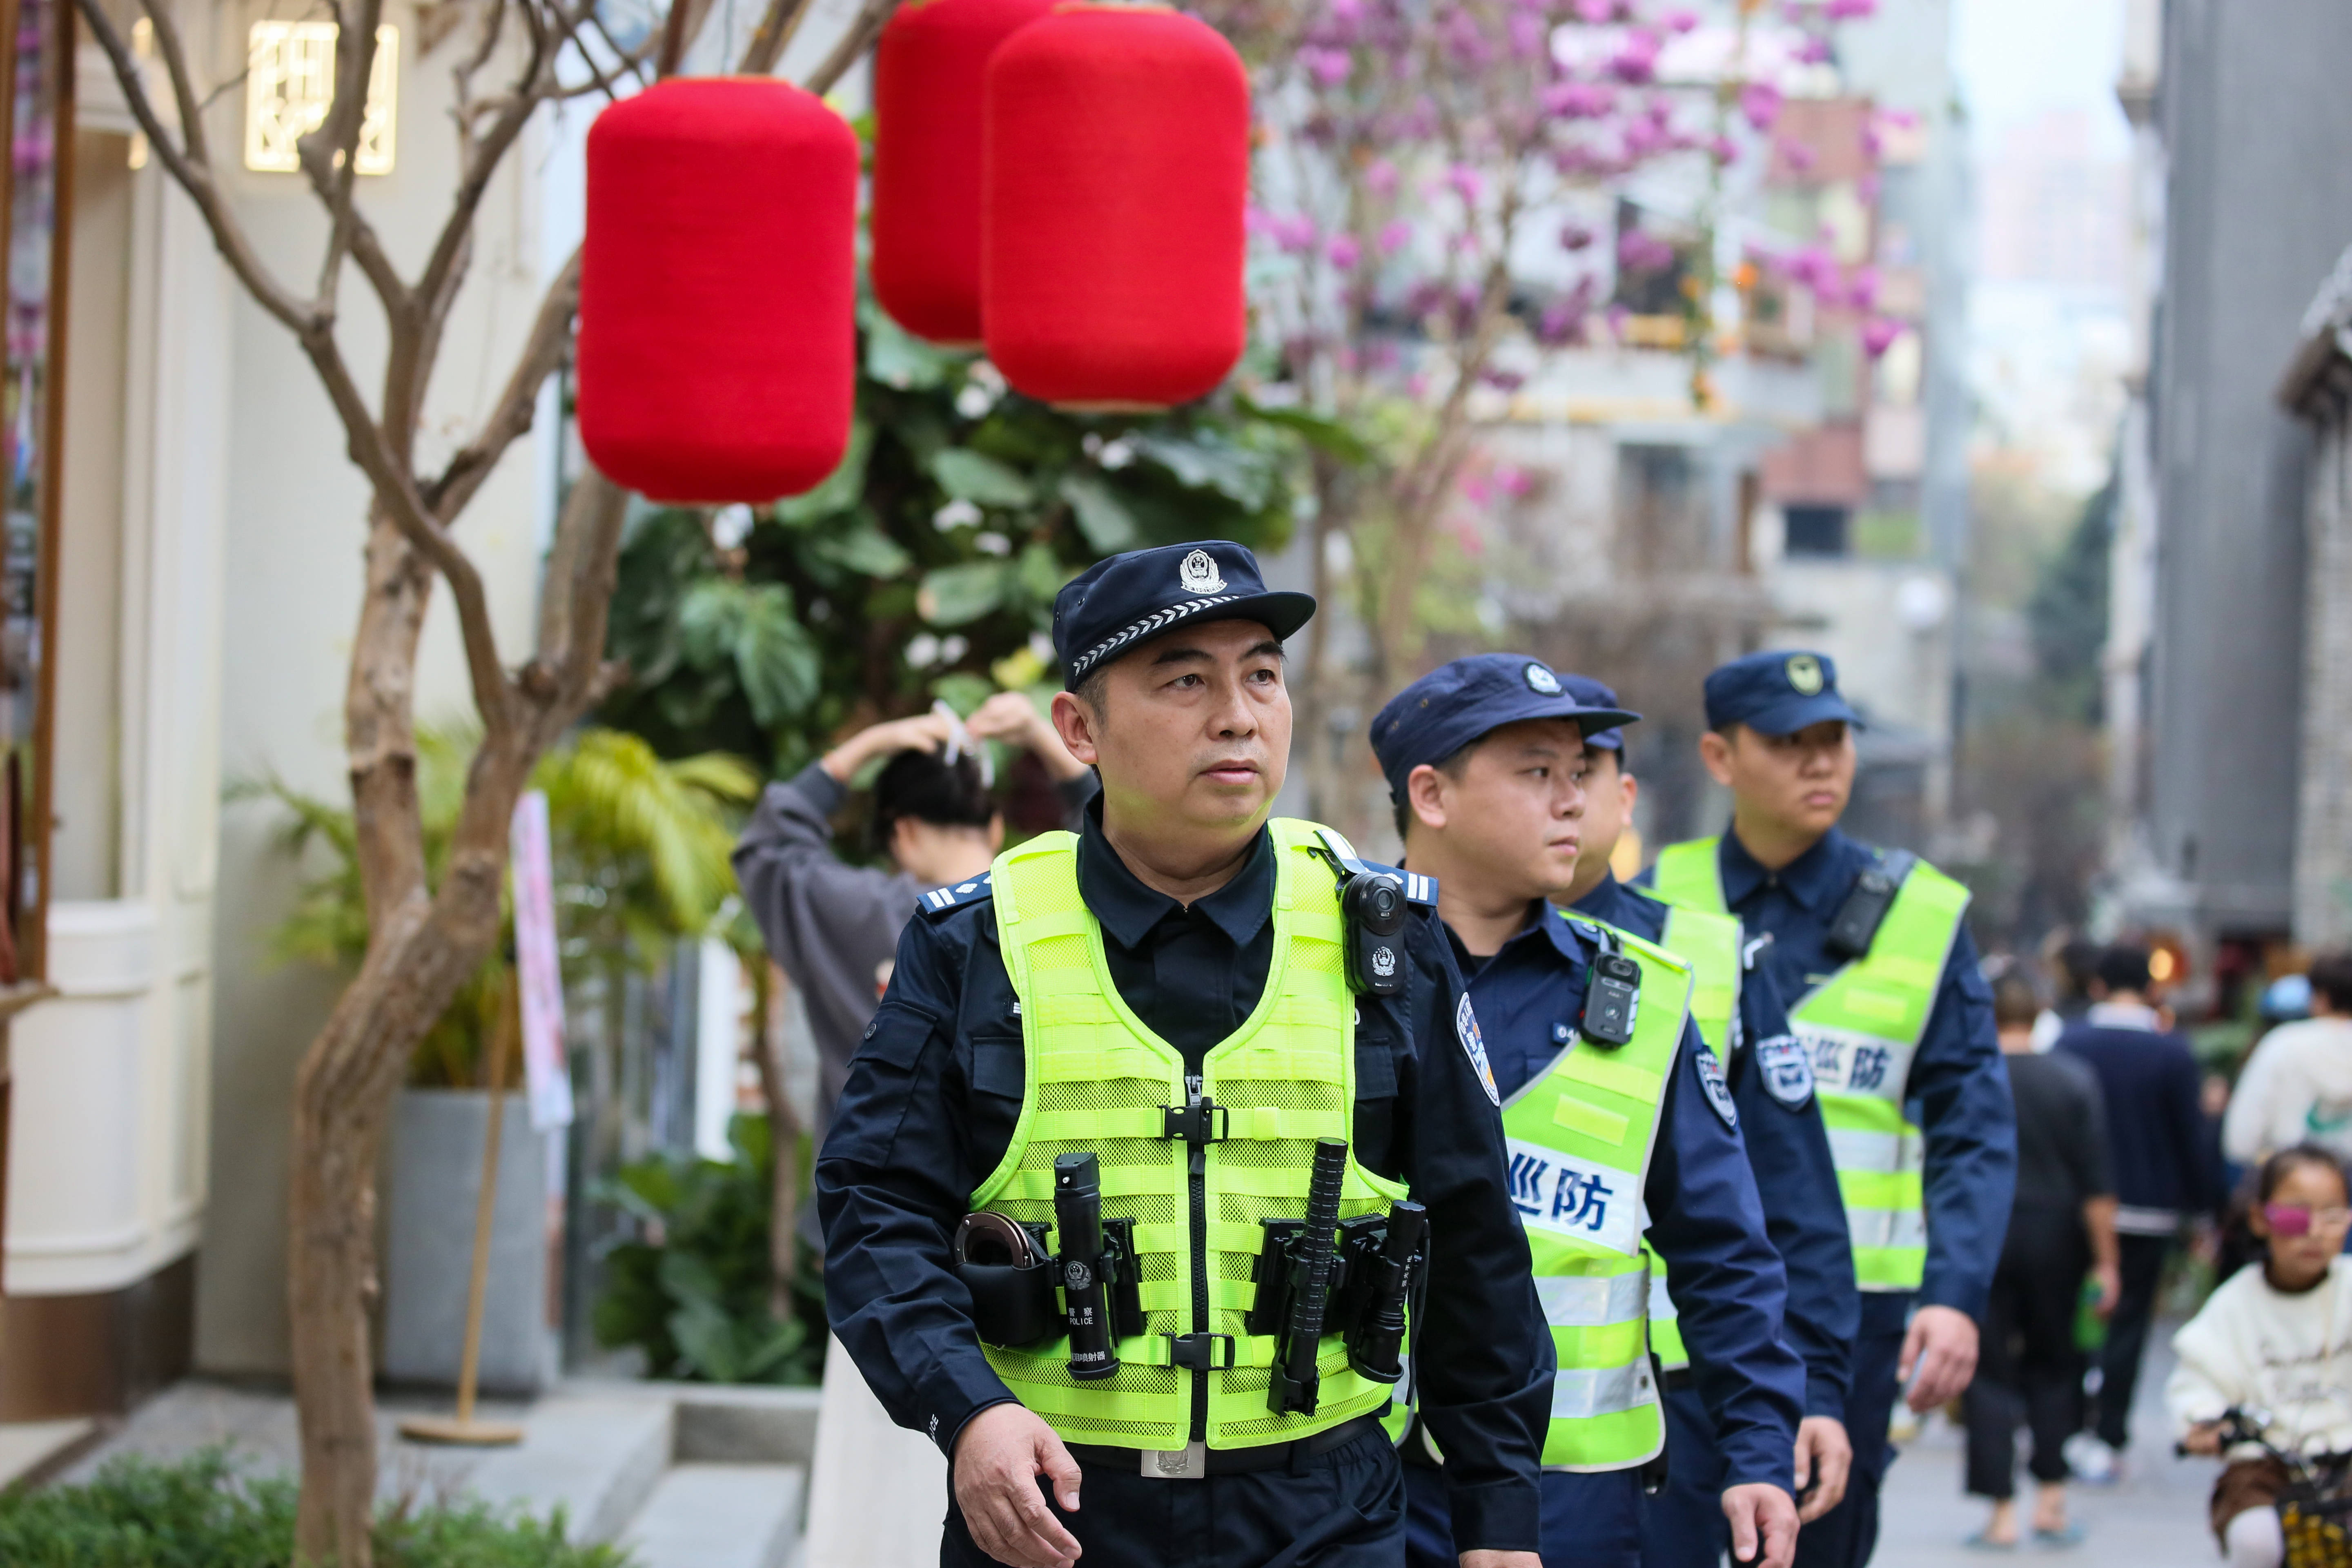 安心过大年 民警护平安——探访深圳市公安局南山分局民警的春节安保日常